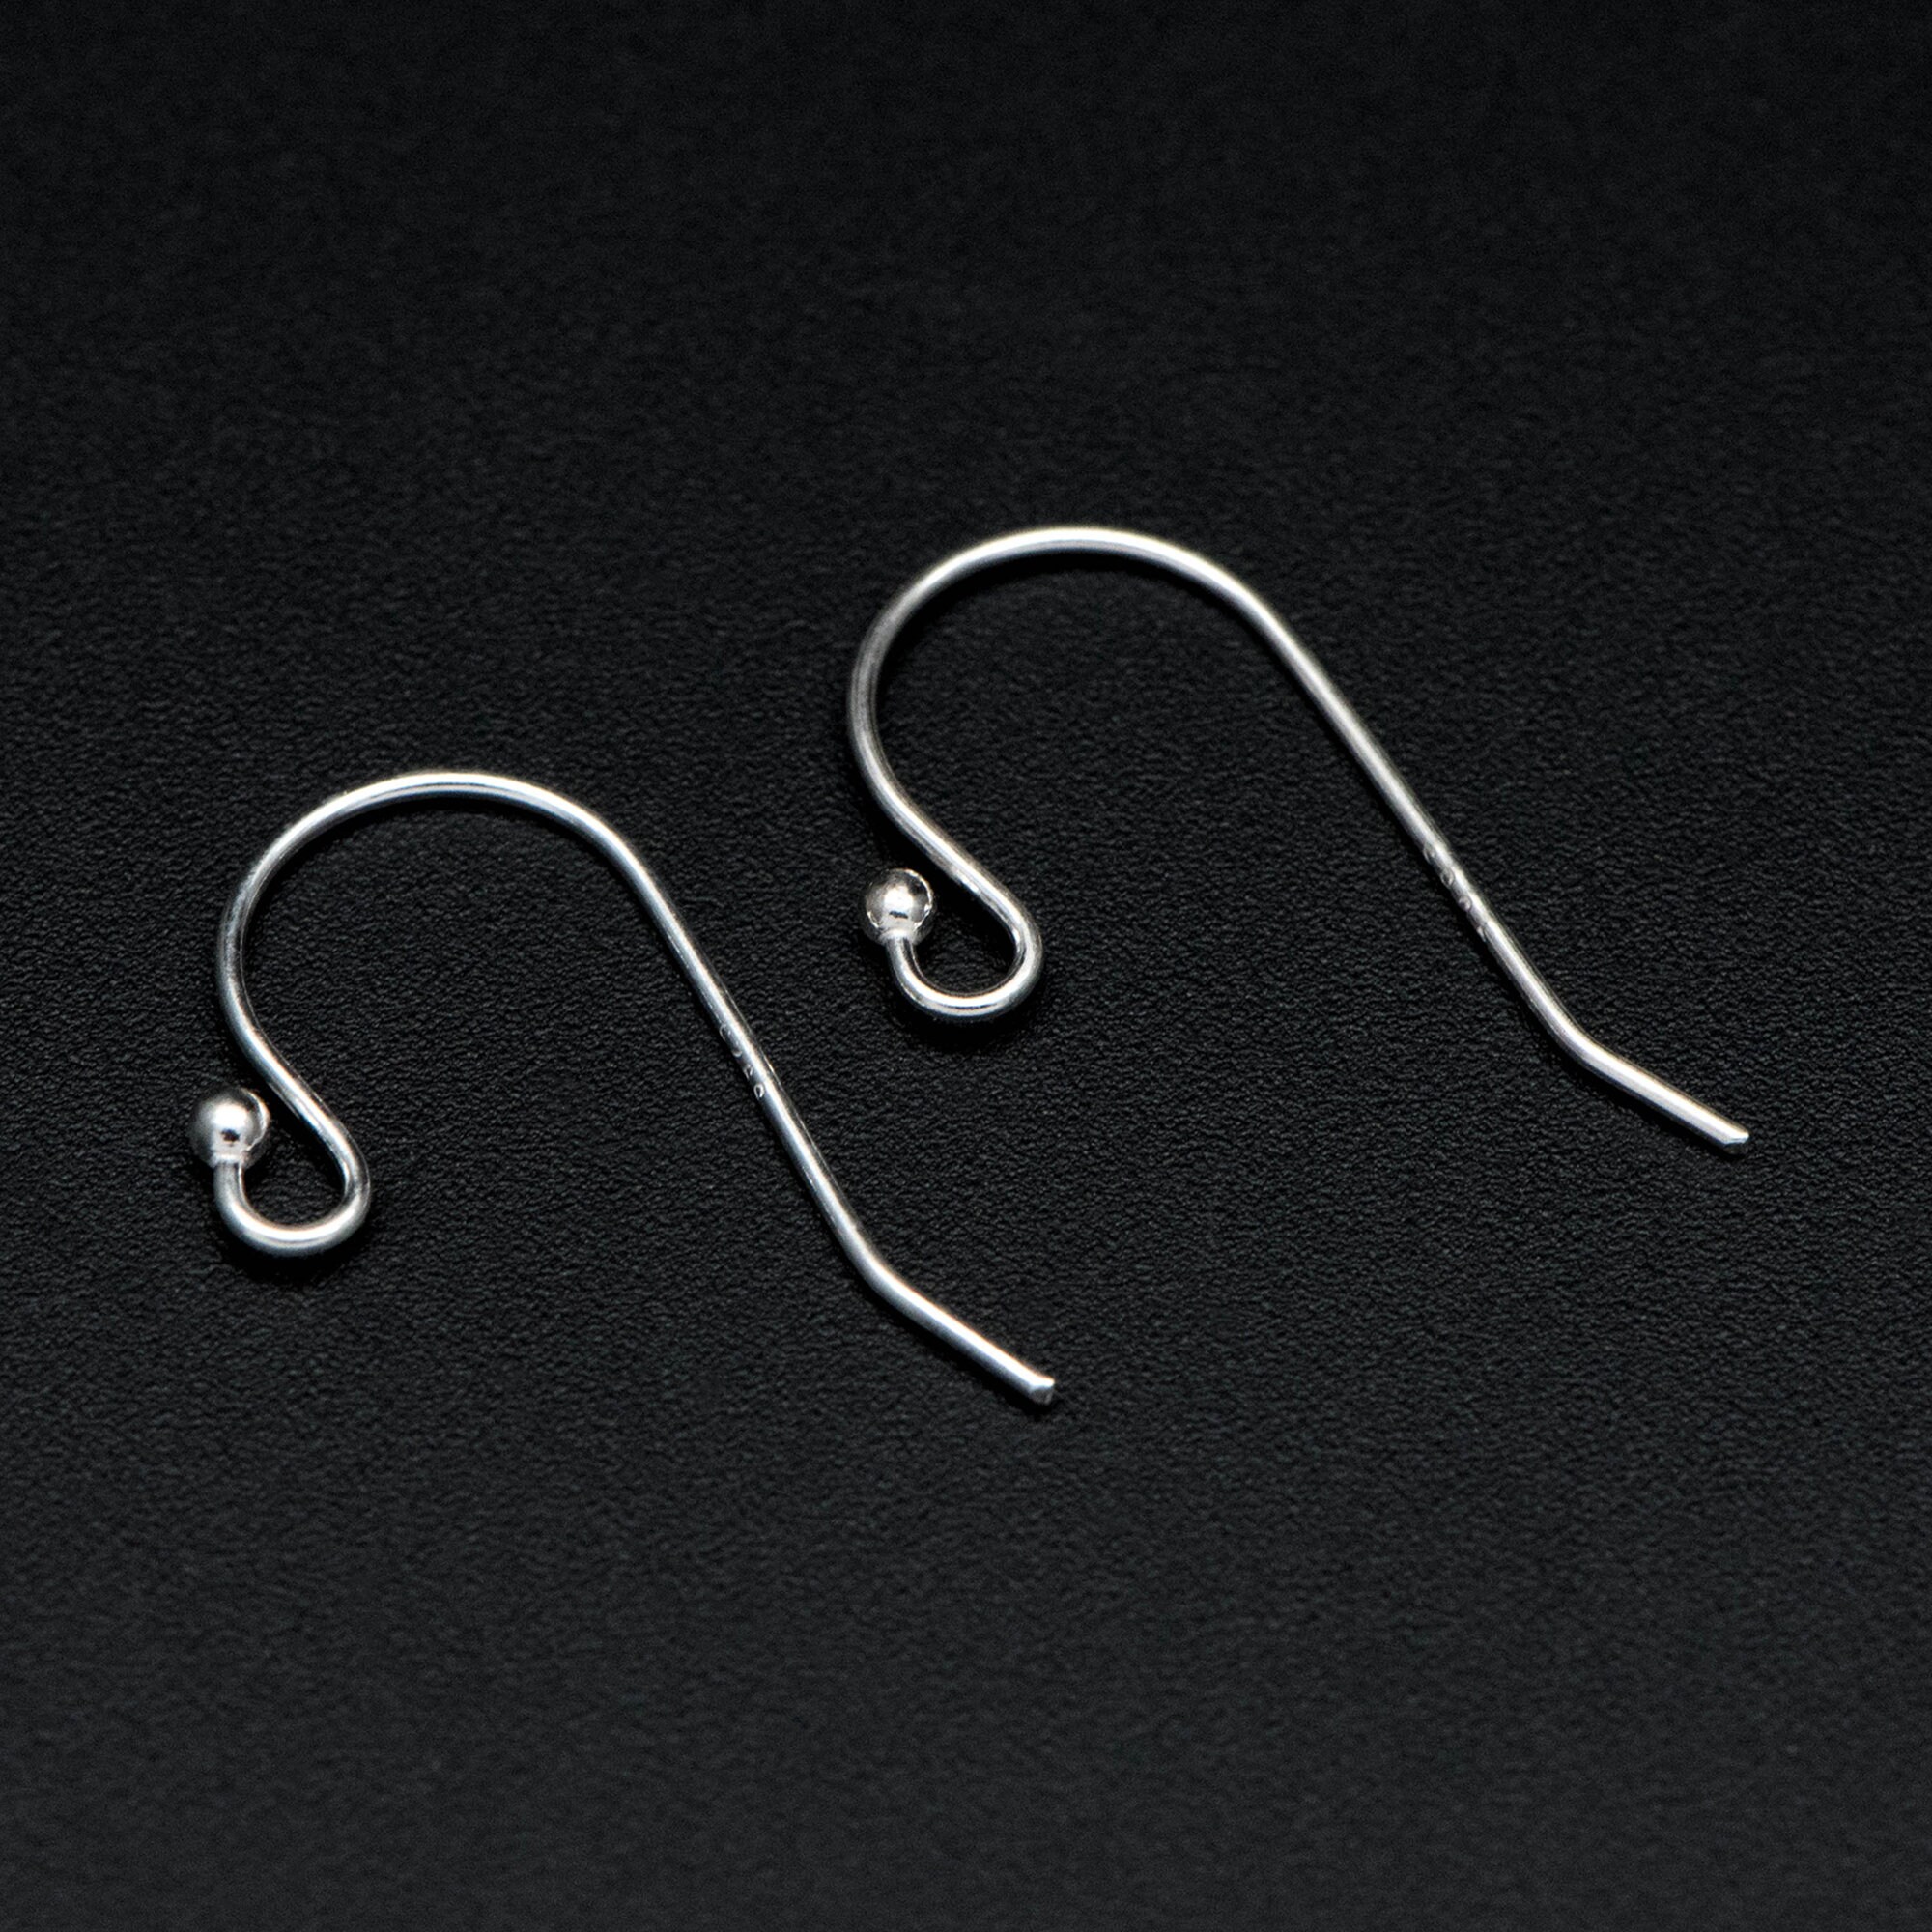 6 Pairs of Sterling Silver Earring Hooks, 925 Silver Ear Wire Hook